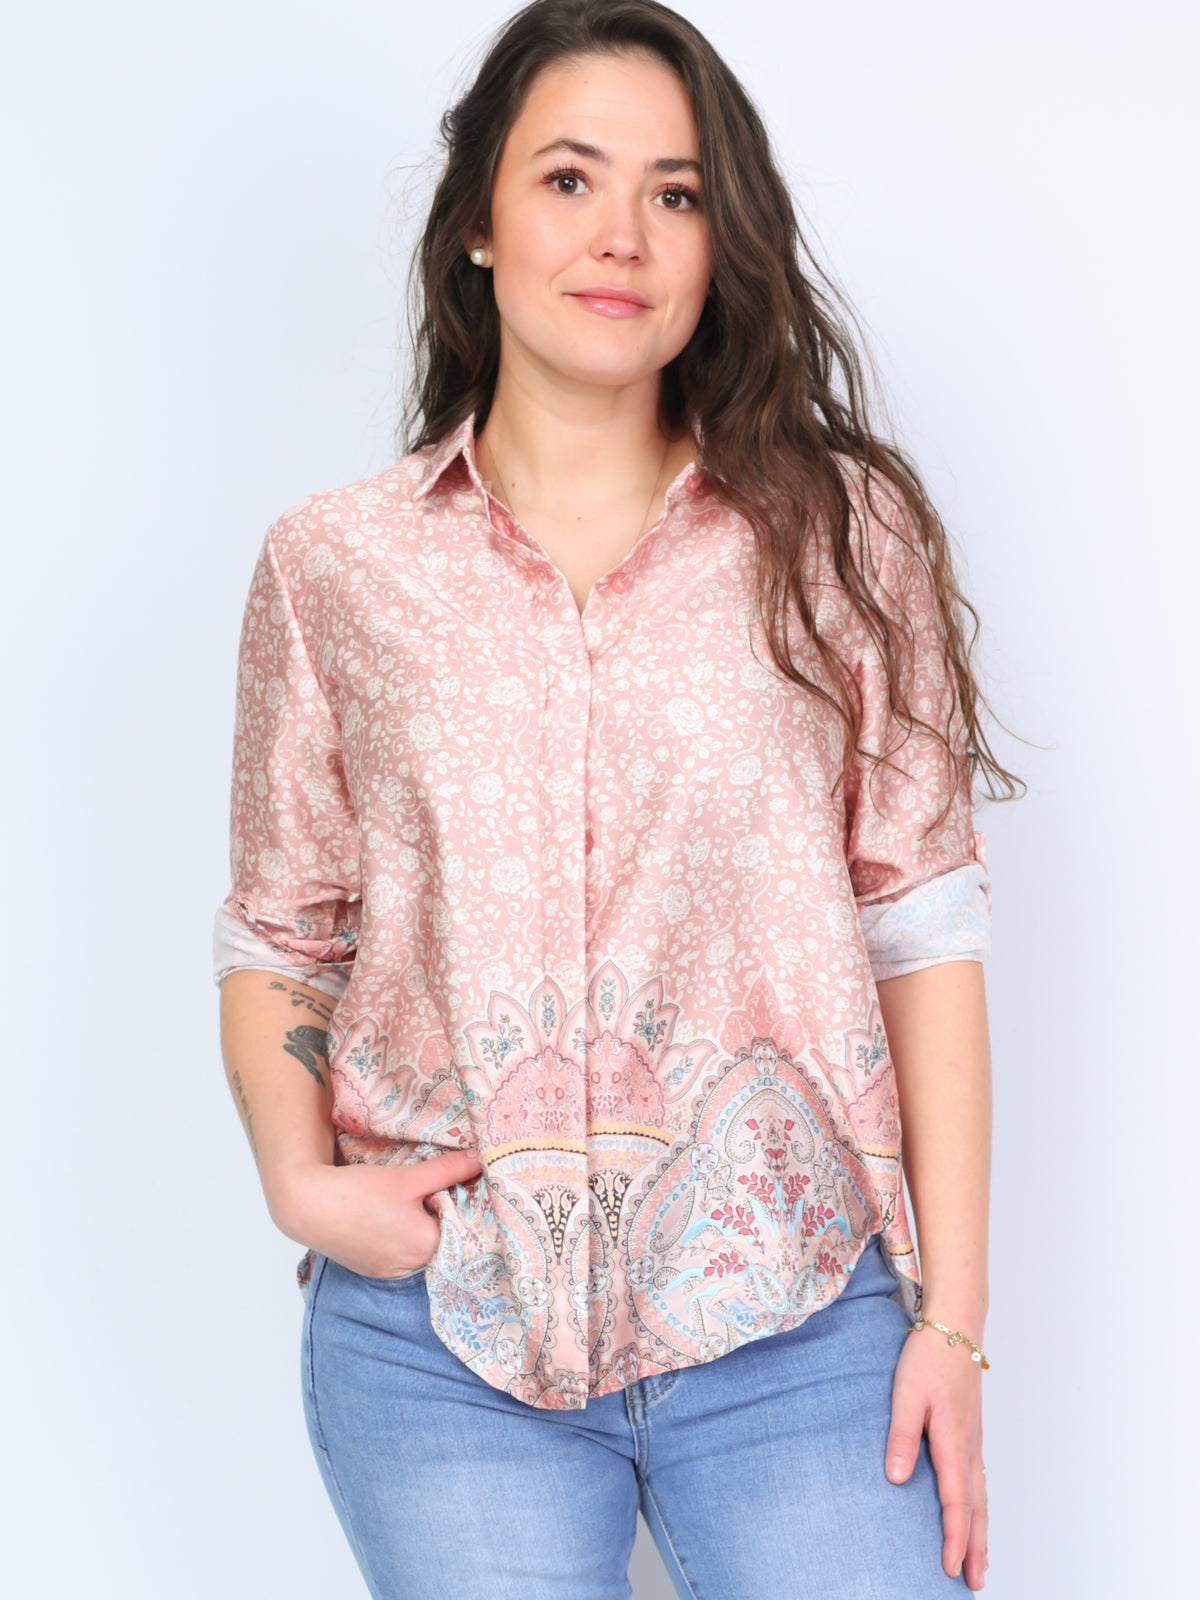 Shirt with mandala pattern